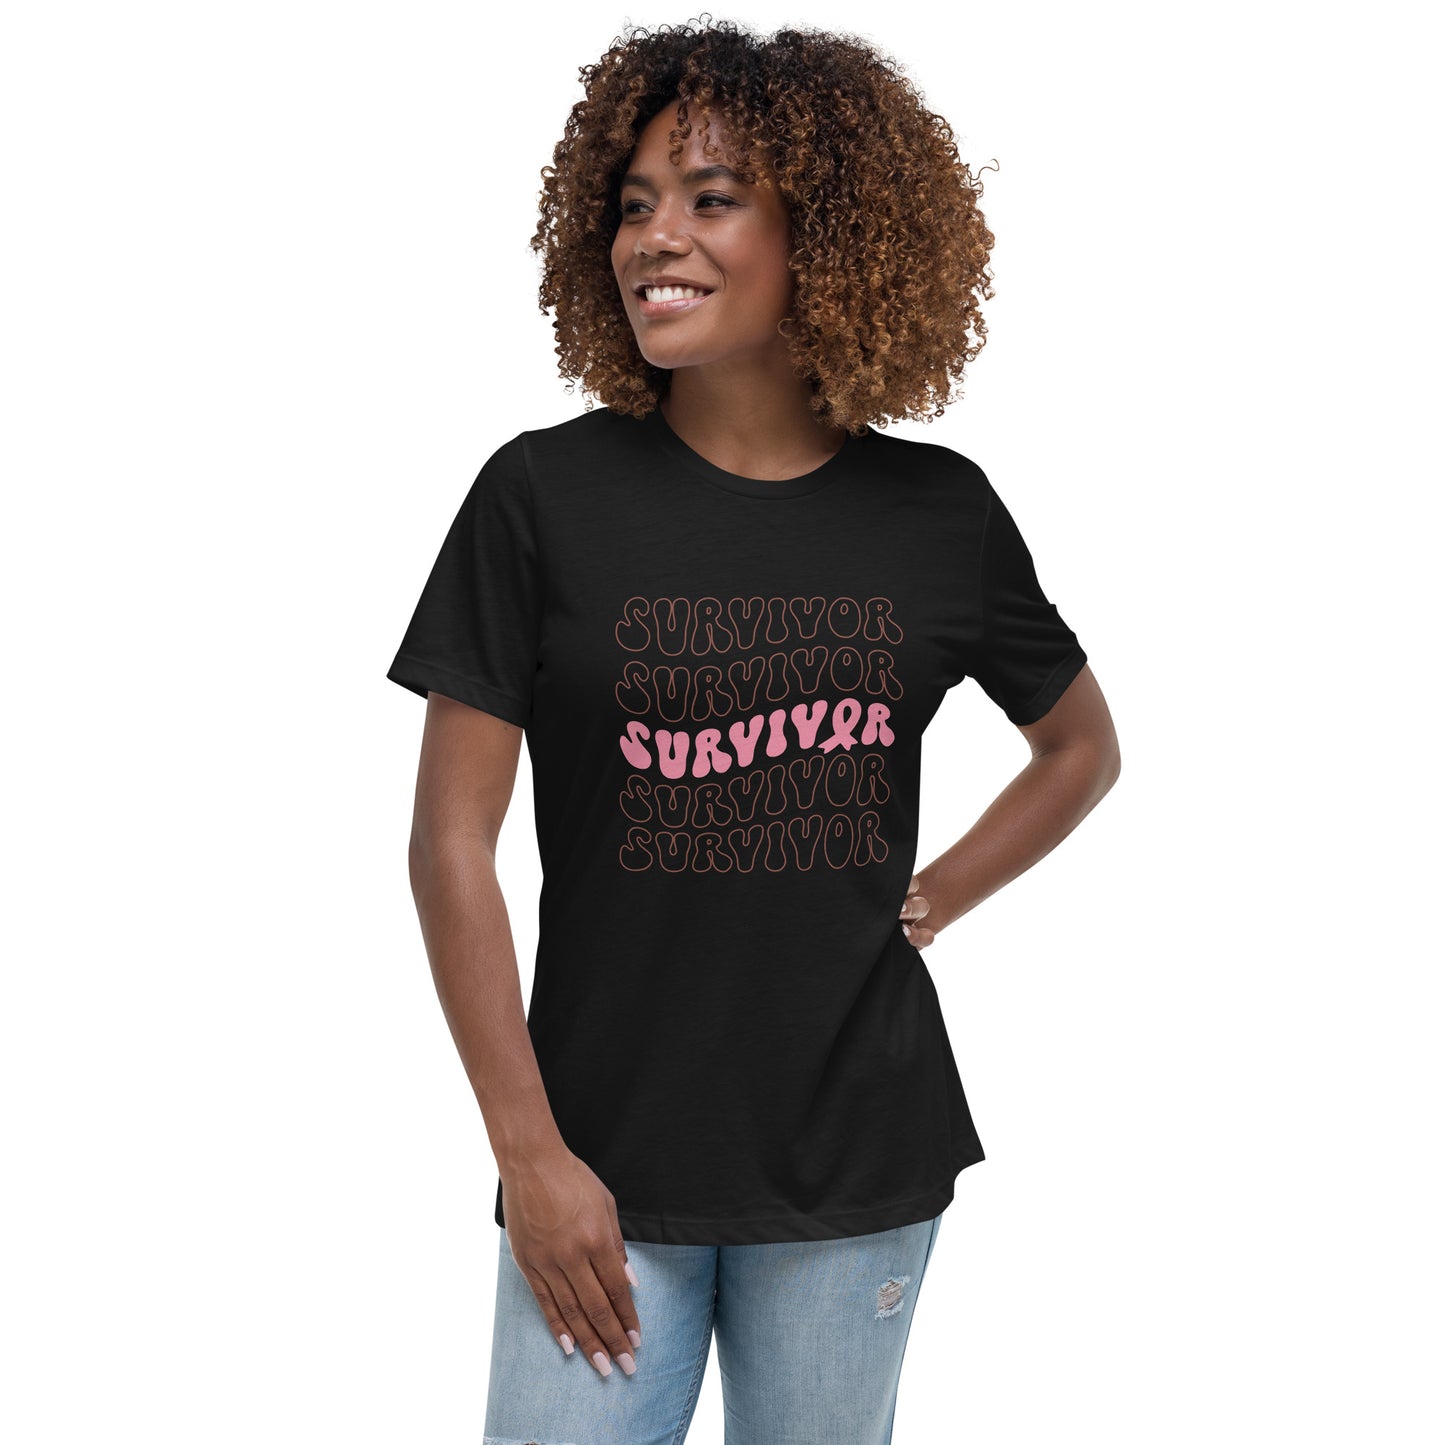 Survivor Women's Relaxed T-Shirt